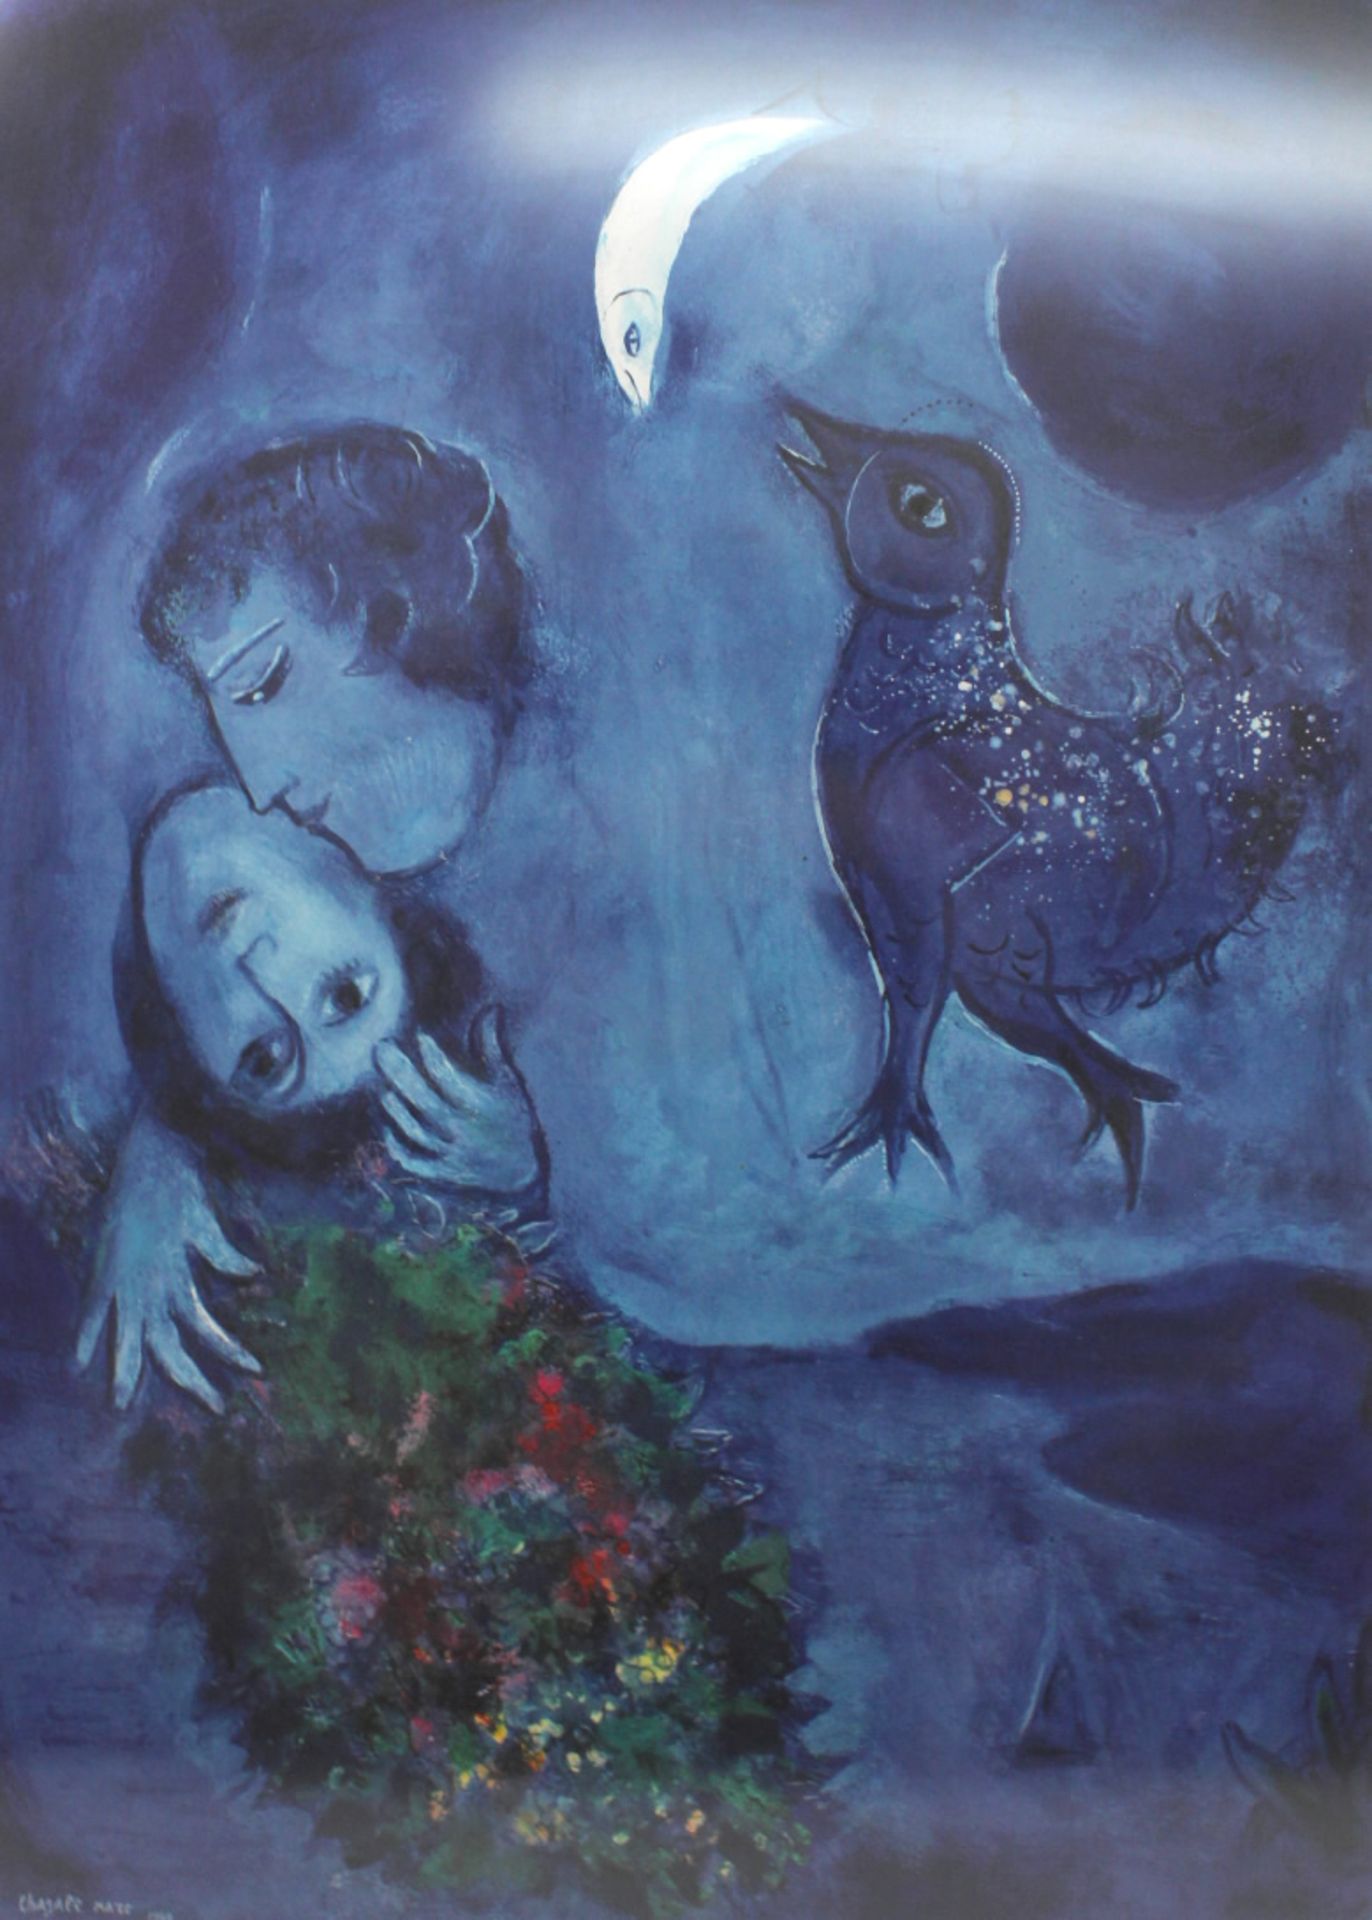 Farboffsetlithographie, Marc Chagall 1949- funkelner Vogel bei Mondschein